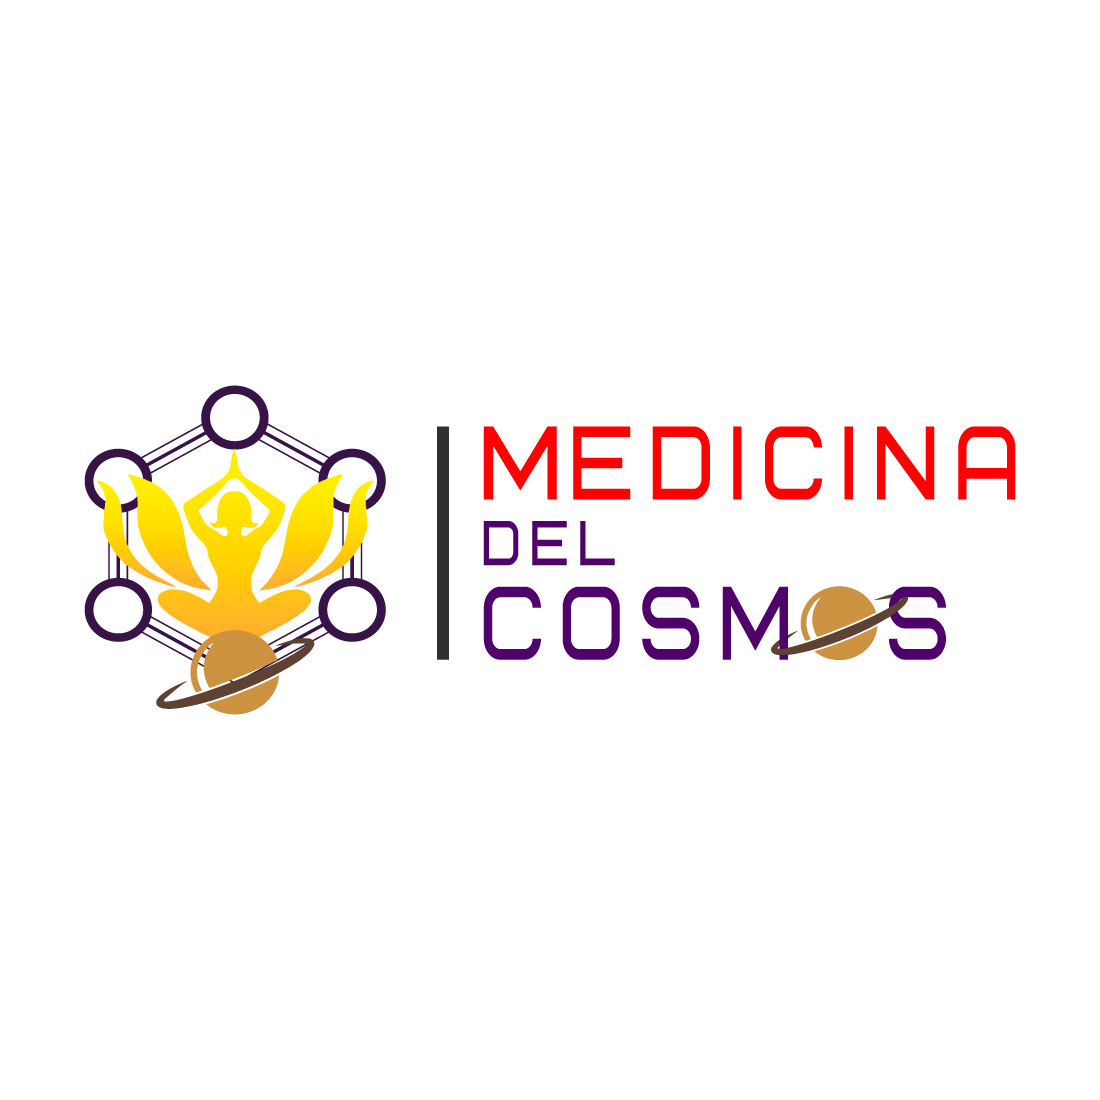 Medicina del cosmoc preview image.